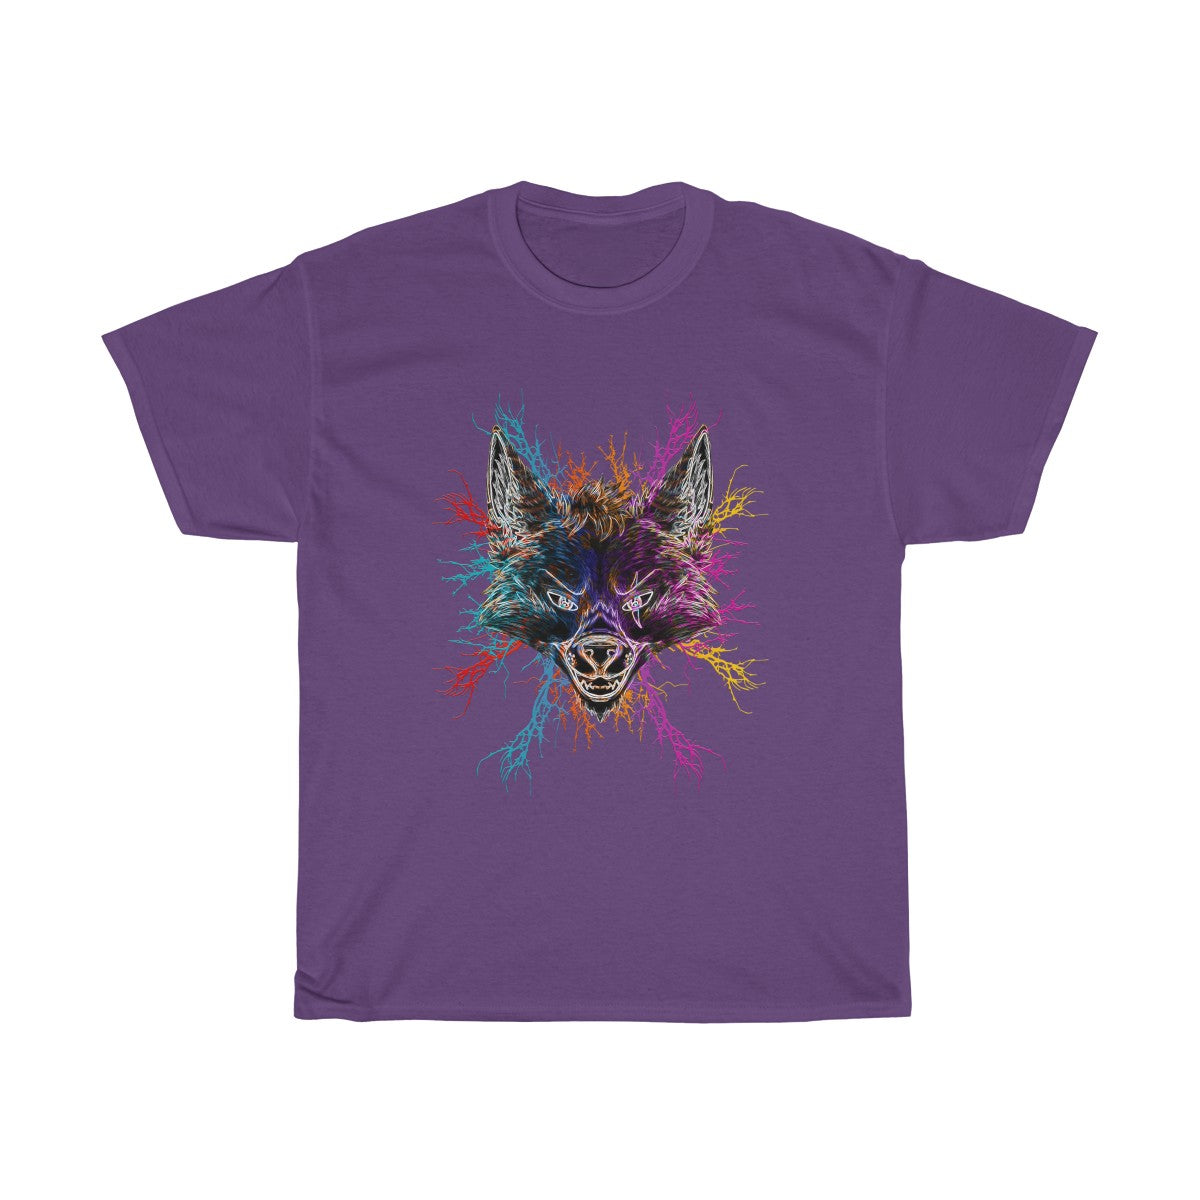 Paint Me Good - T-Shirt T-Shirt Corey Coyote Purple S 